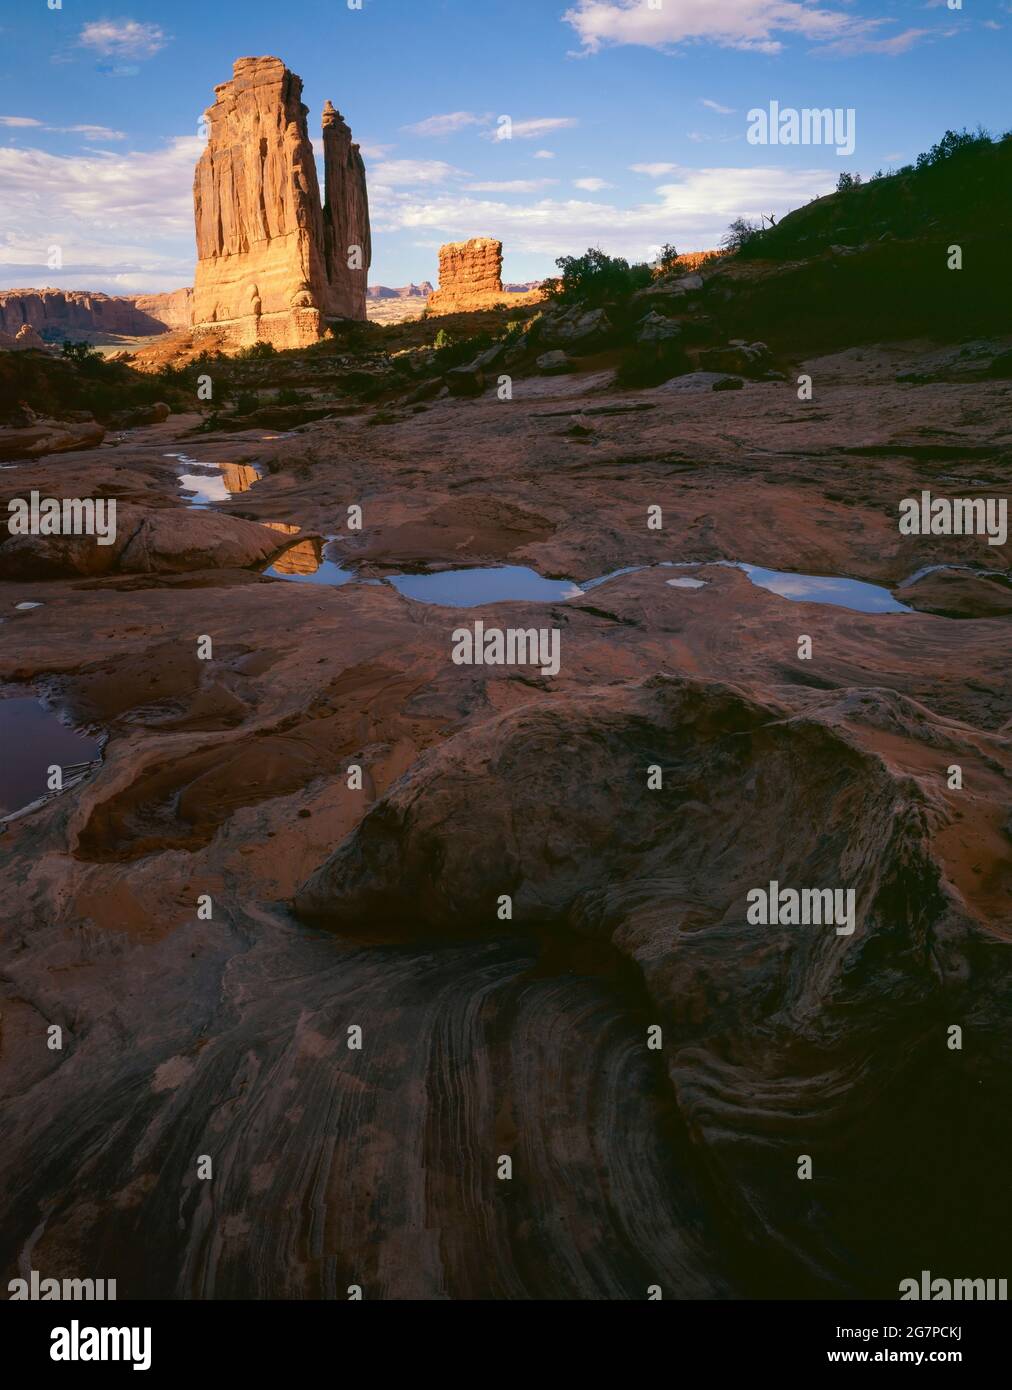 Arches National Park UT / JULIO Los bolsillos de agua en la roca resbaladiza de la corte de lavado reflejan el cielo azul y su nombre butte. Foto de stock